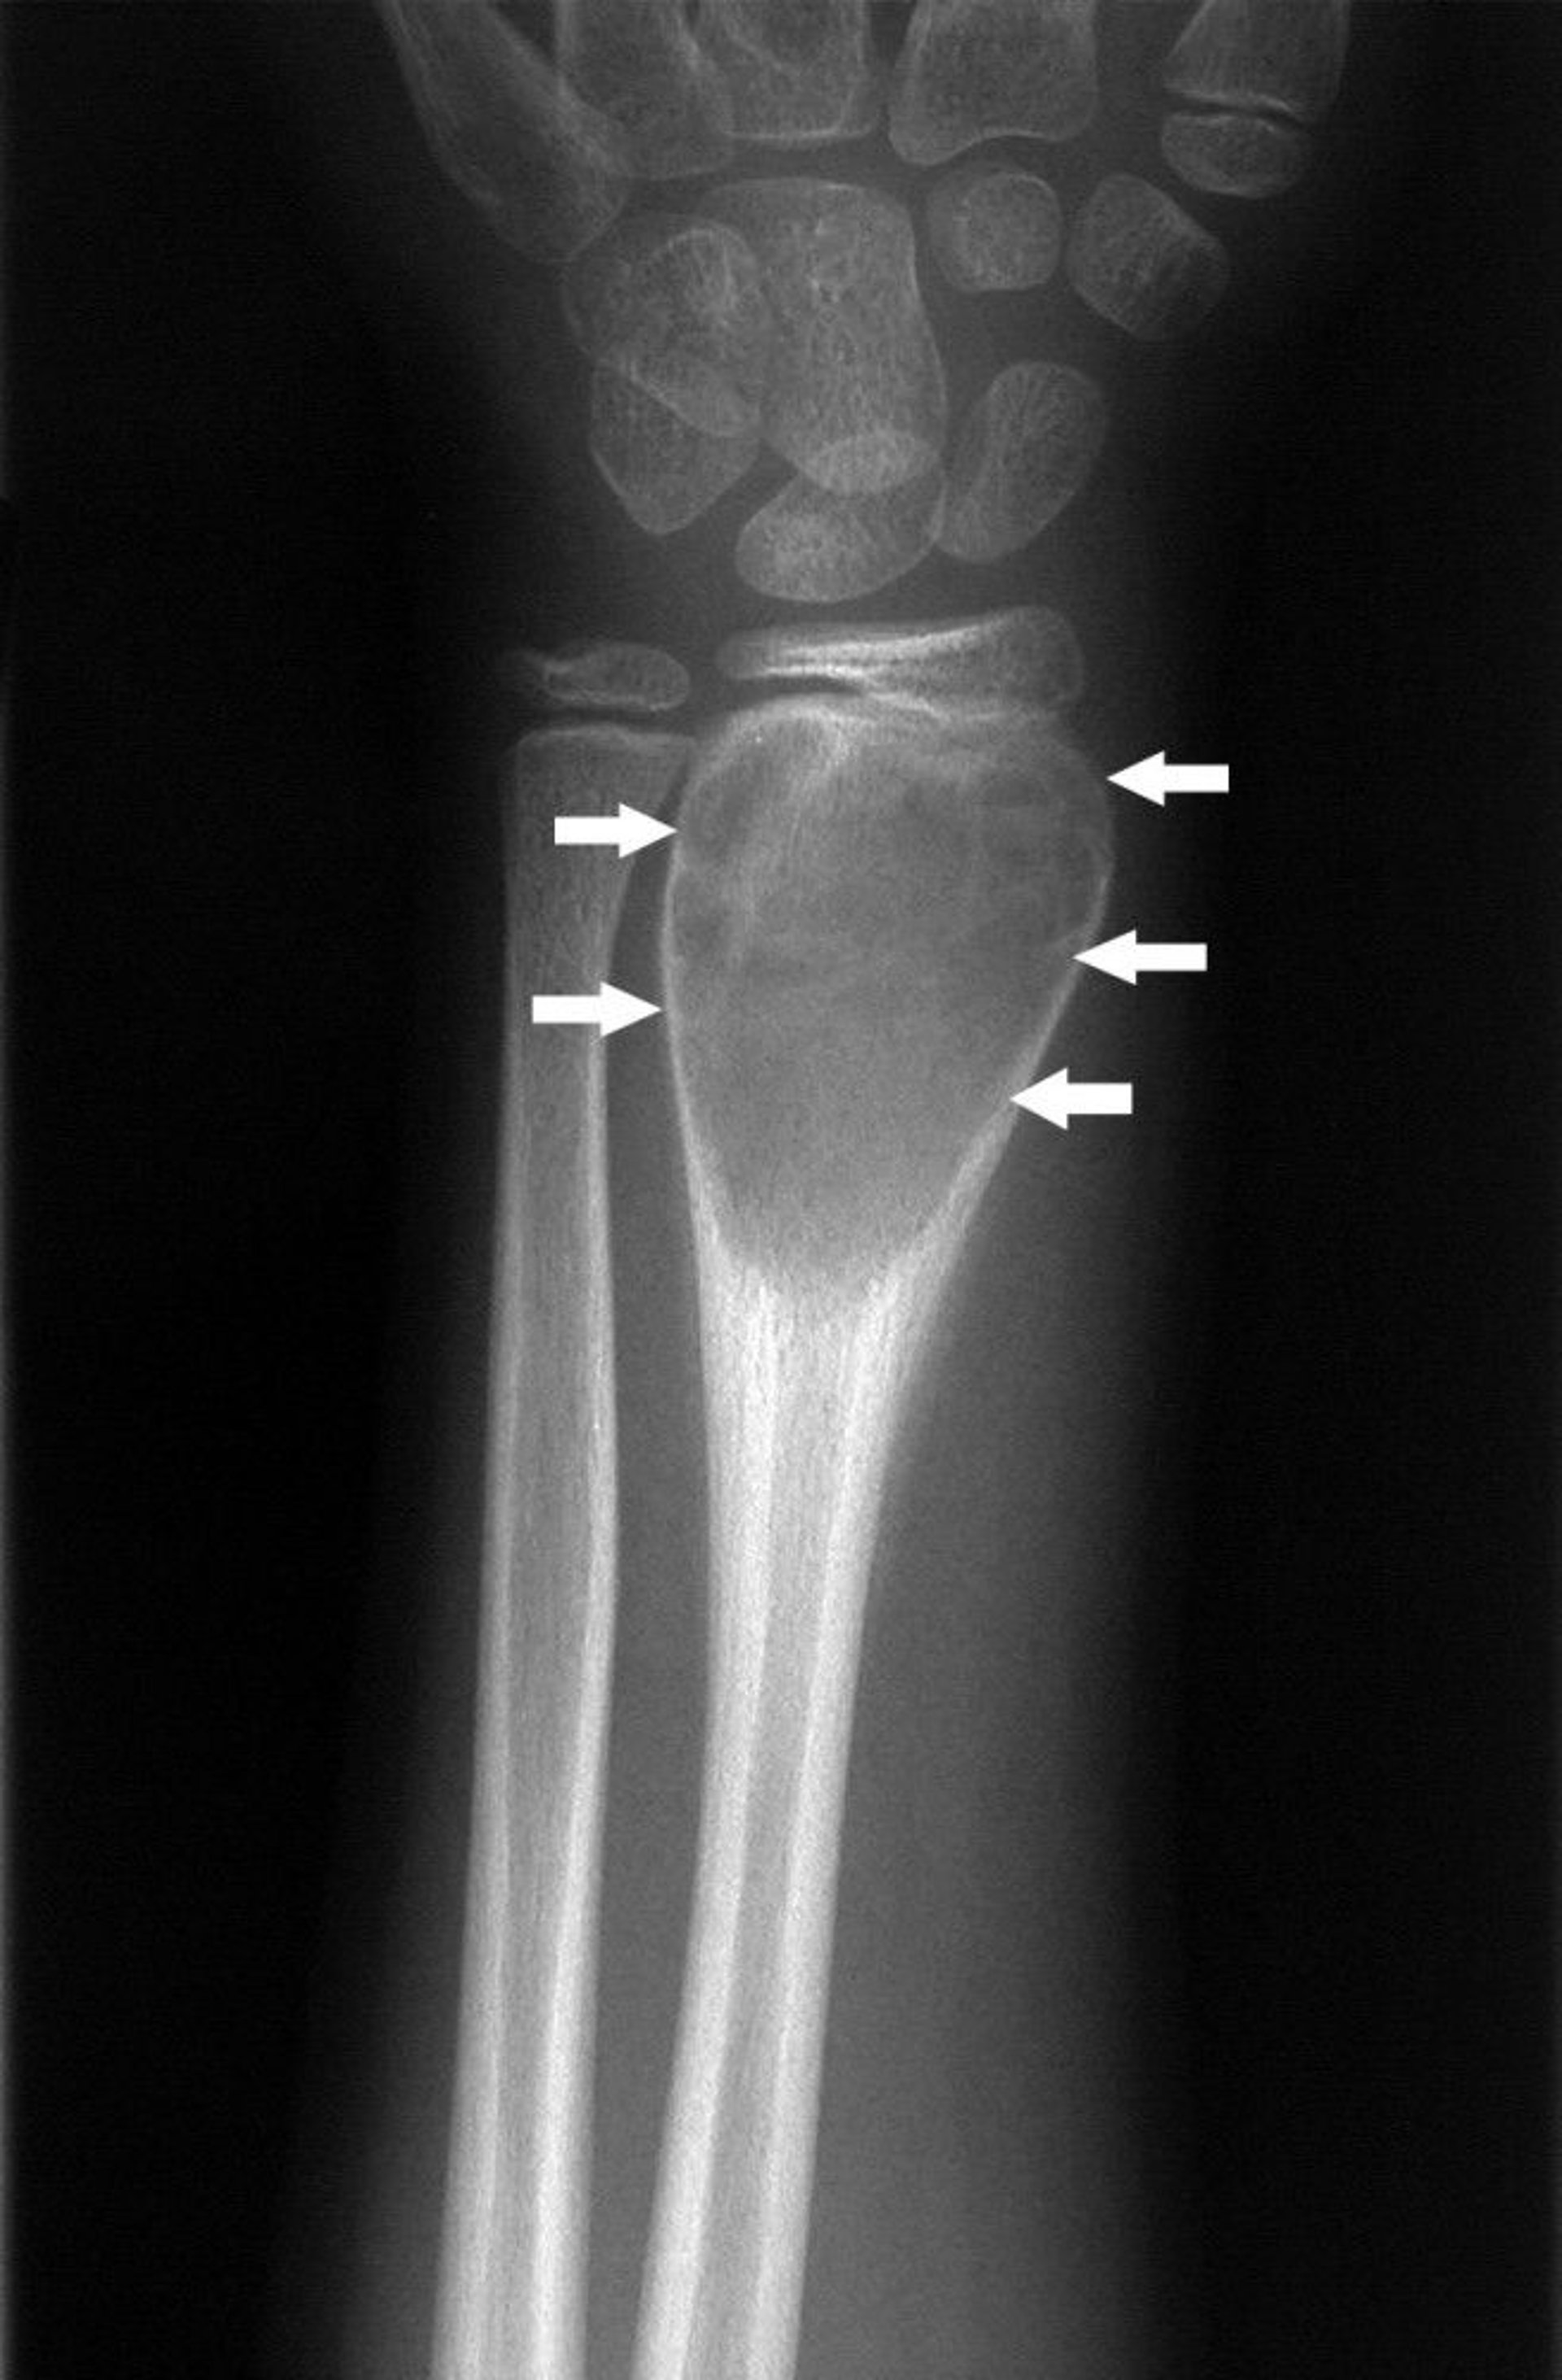 Aneurysmal Bone Cyst of the Wrist